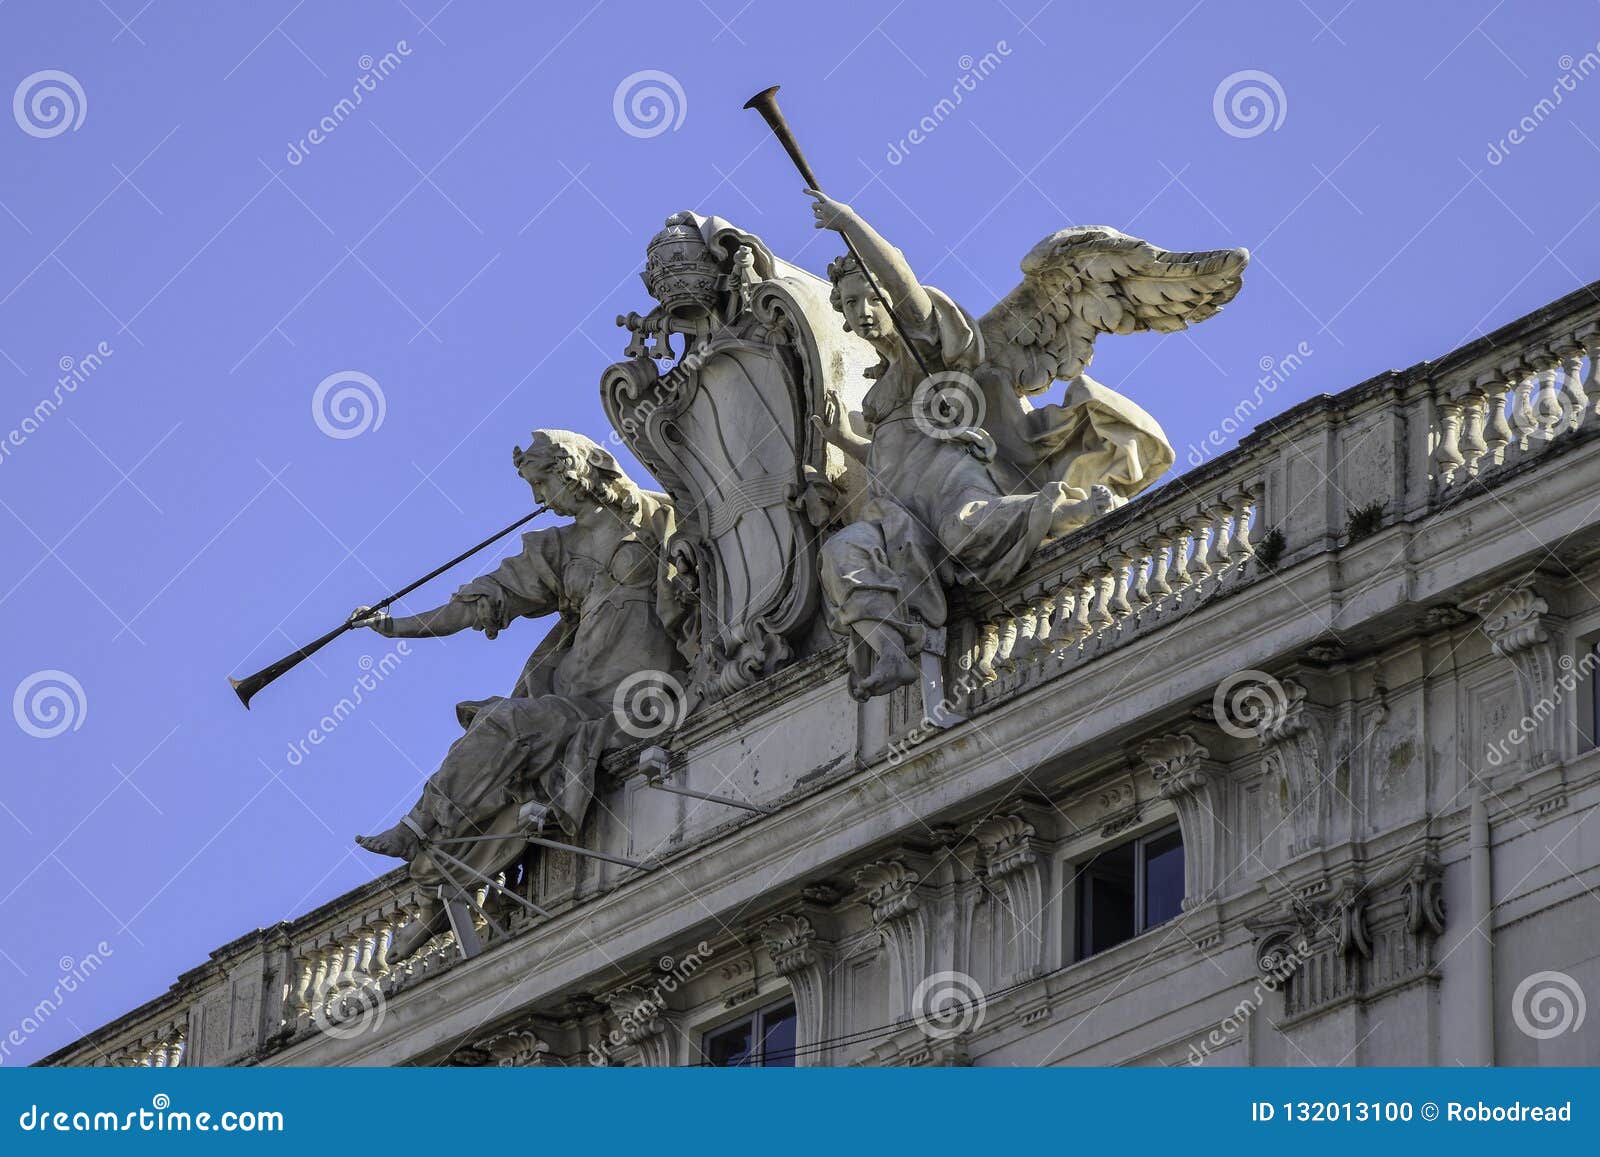 palazzo della consulta, seat of the italian constitutional court, rome, italy.